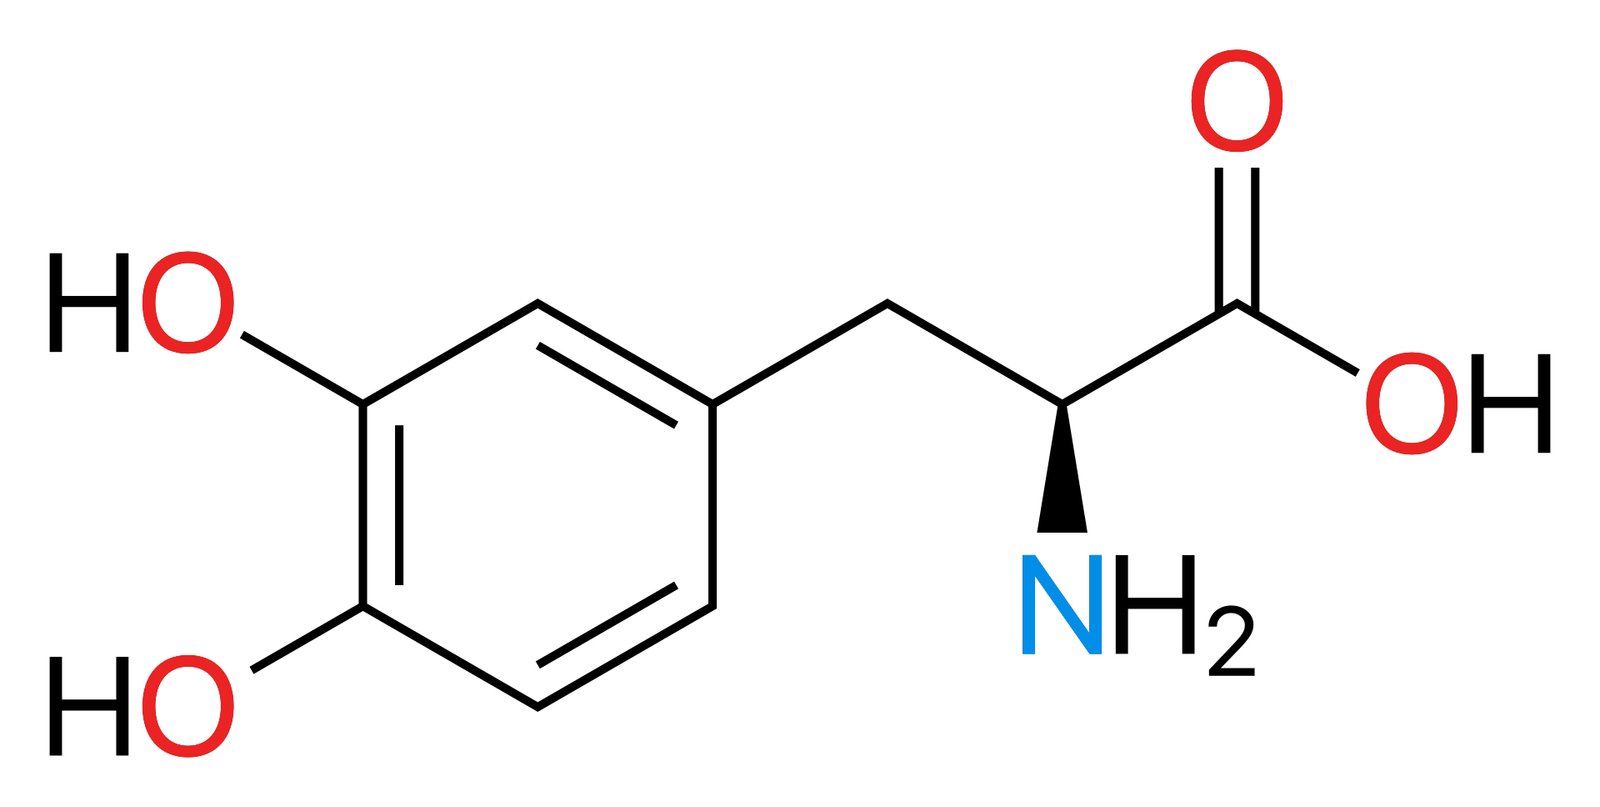 ثنائي هيدروكسي فينيل ألانين اليساري ( 3،4-) C9H11NO4 Dihydroxyphenylalanine